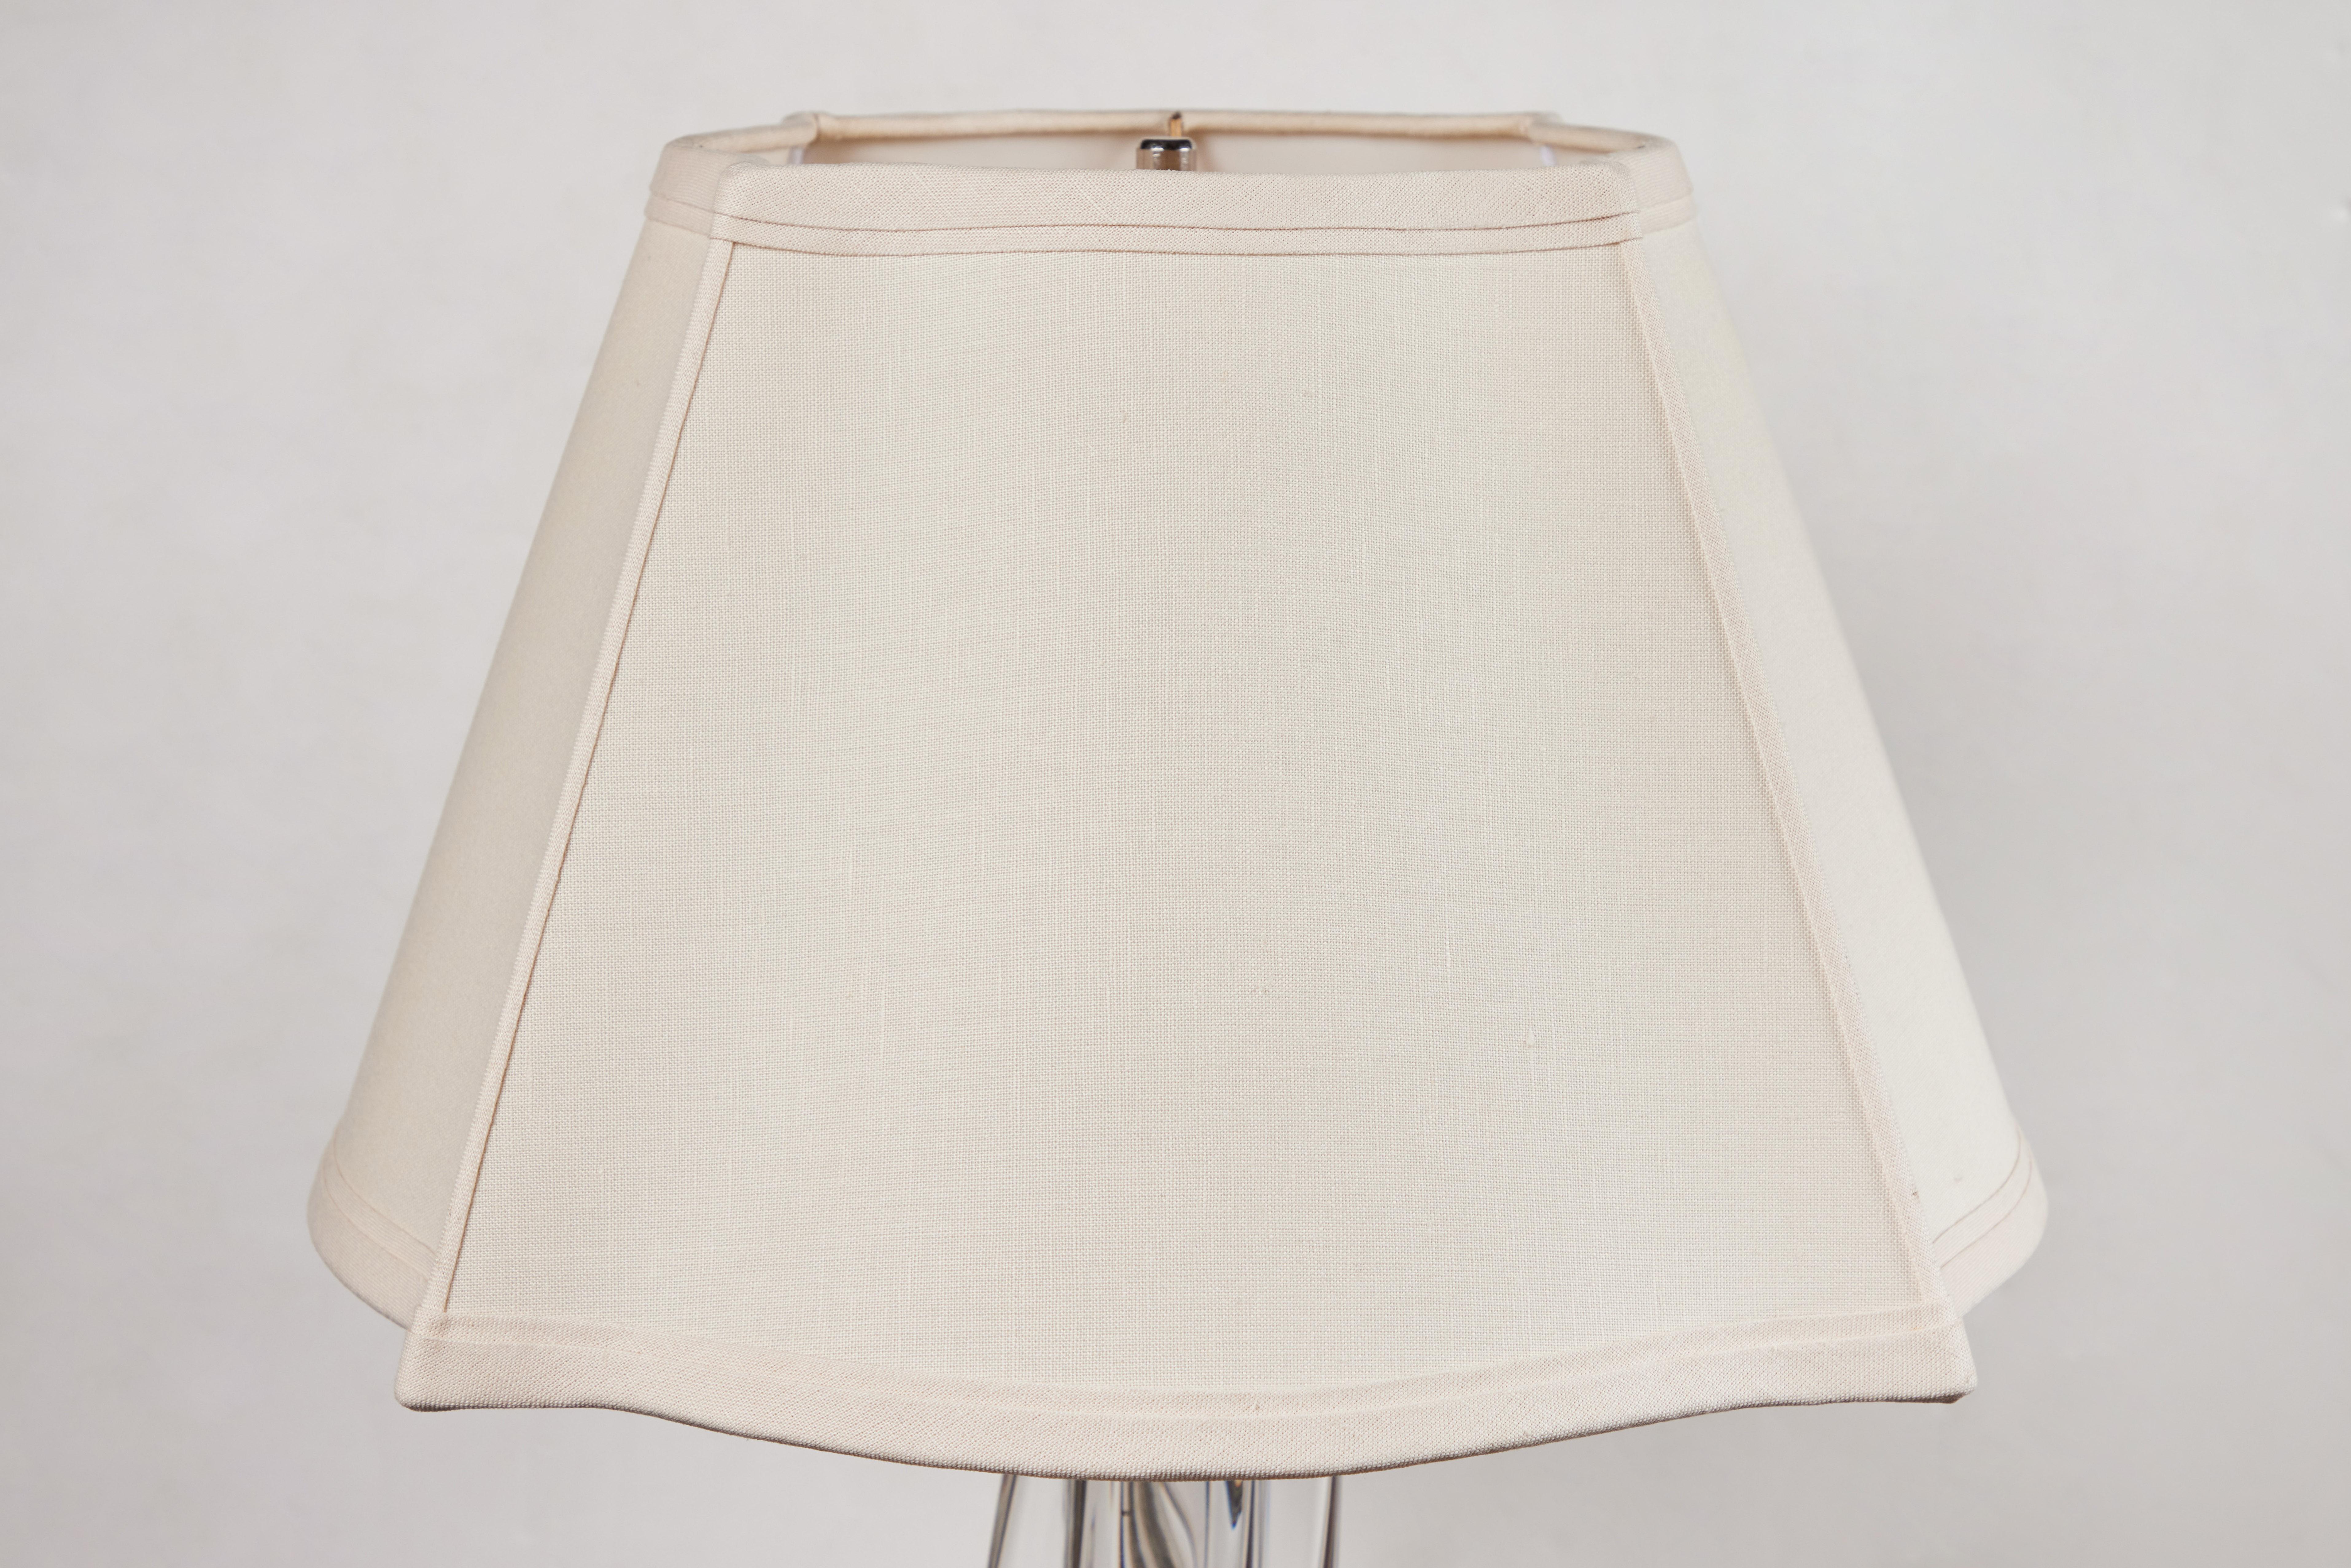 Lampe de table en cristal massif, de forme organique, datant de 1940, de style continental, avec des extrusions entrelacées. Surmonté d'un abat-jour personnalisé. Maintenant câblé pour le courant américain. Mesures : Diamètre de l'abat-jour : 18.5